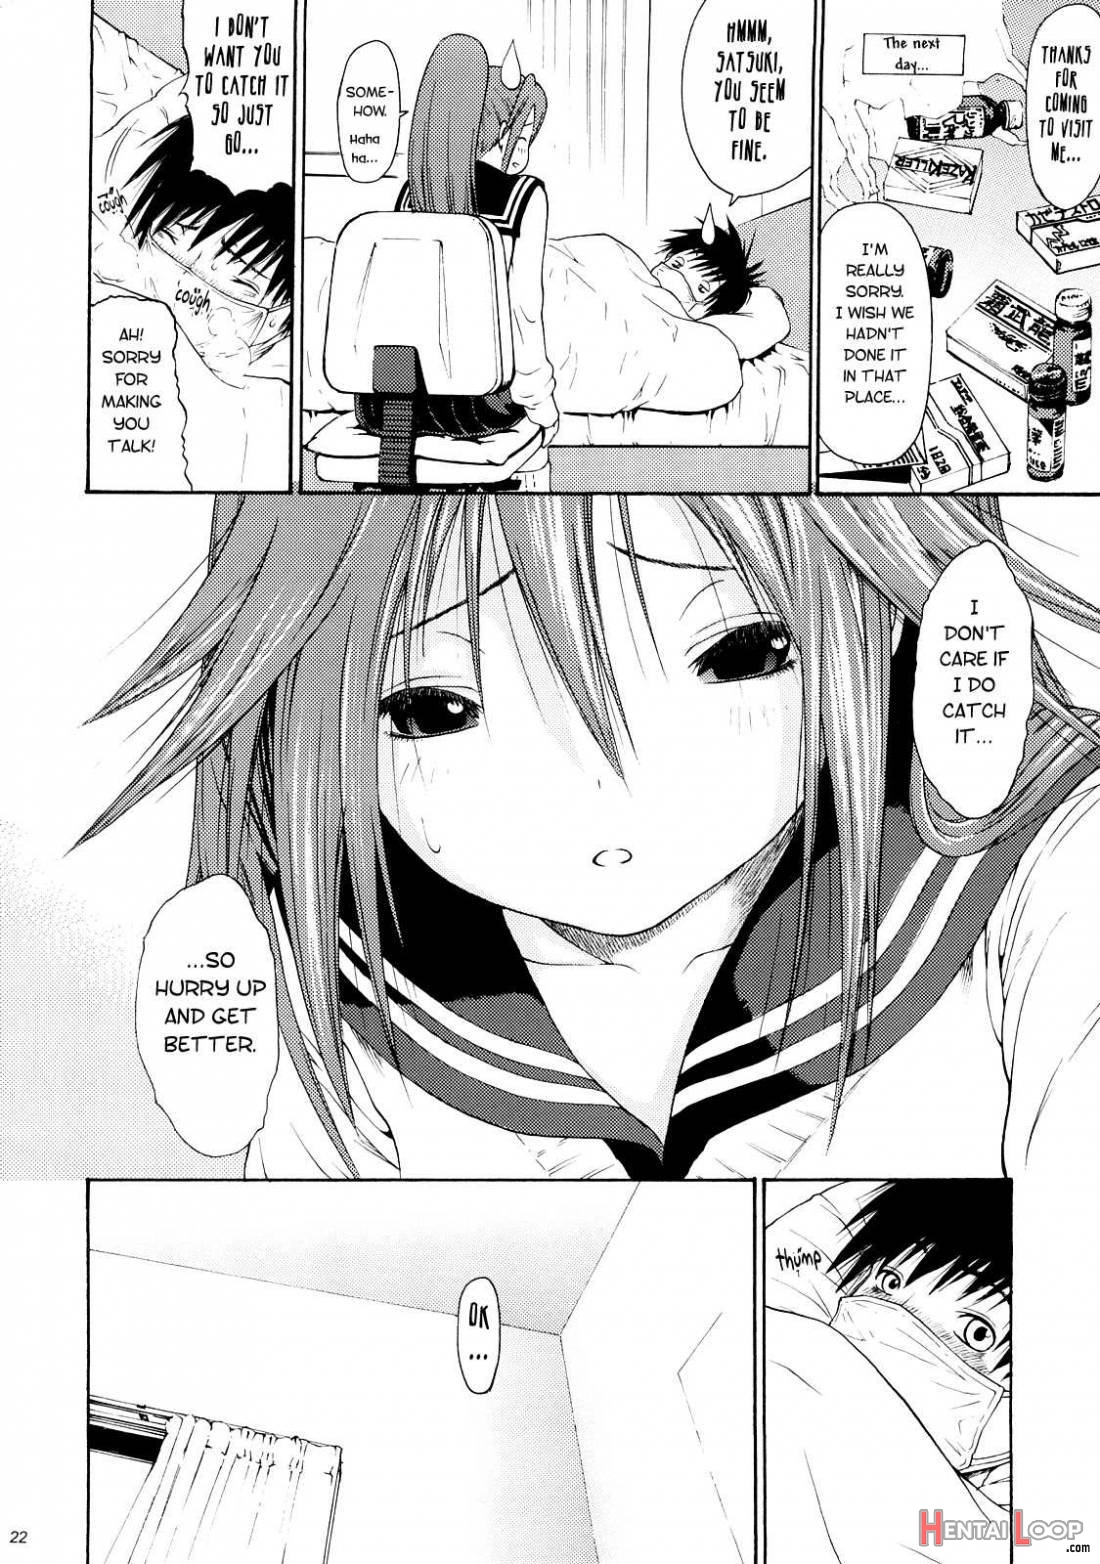 Haru Ichigo Vol.6 page 17